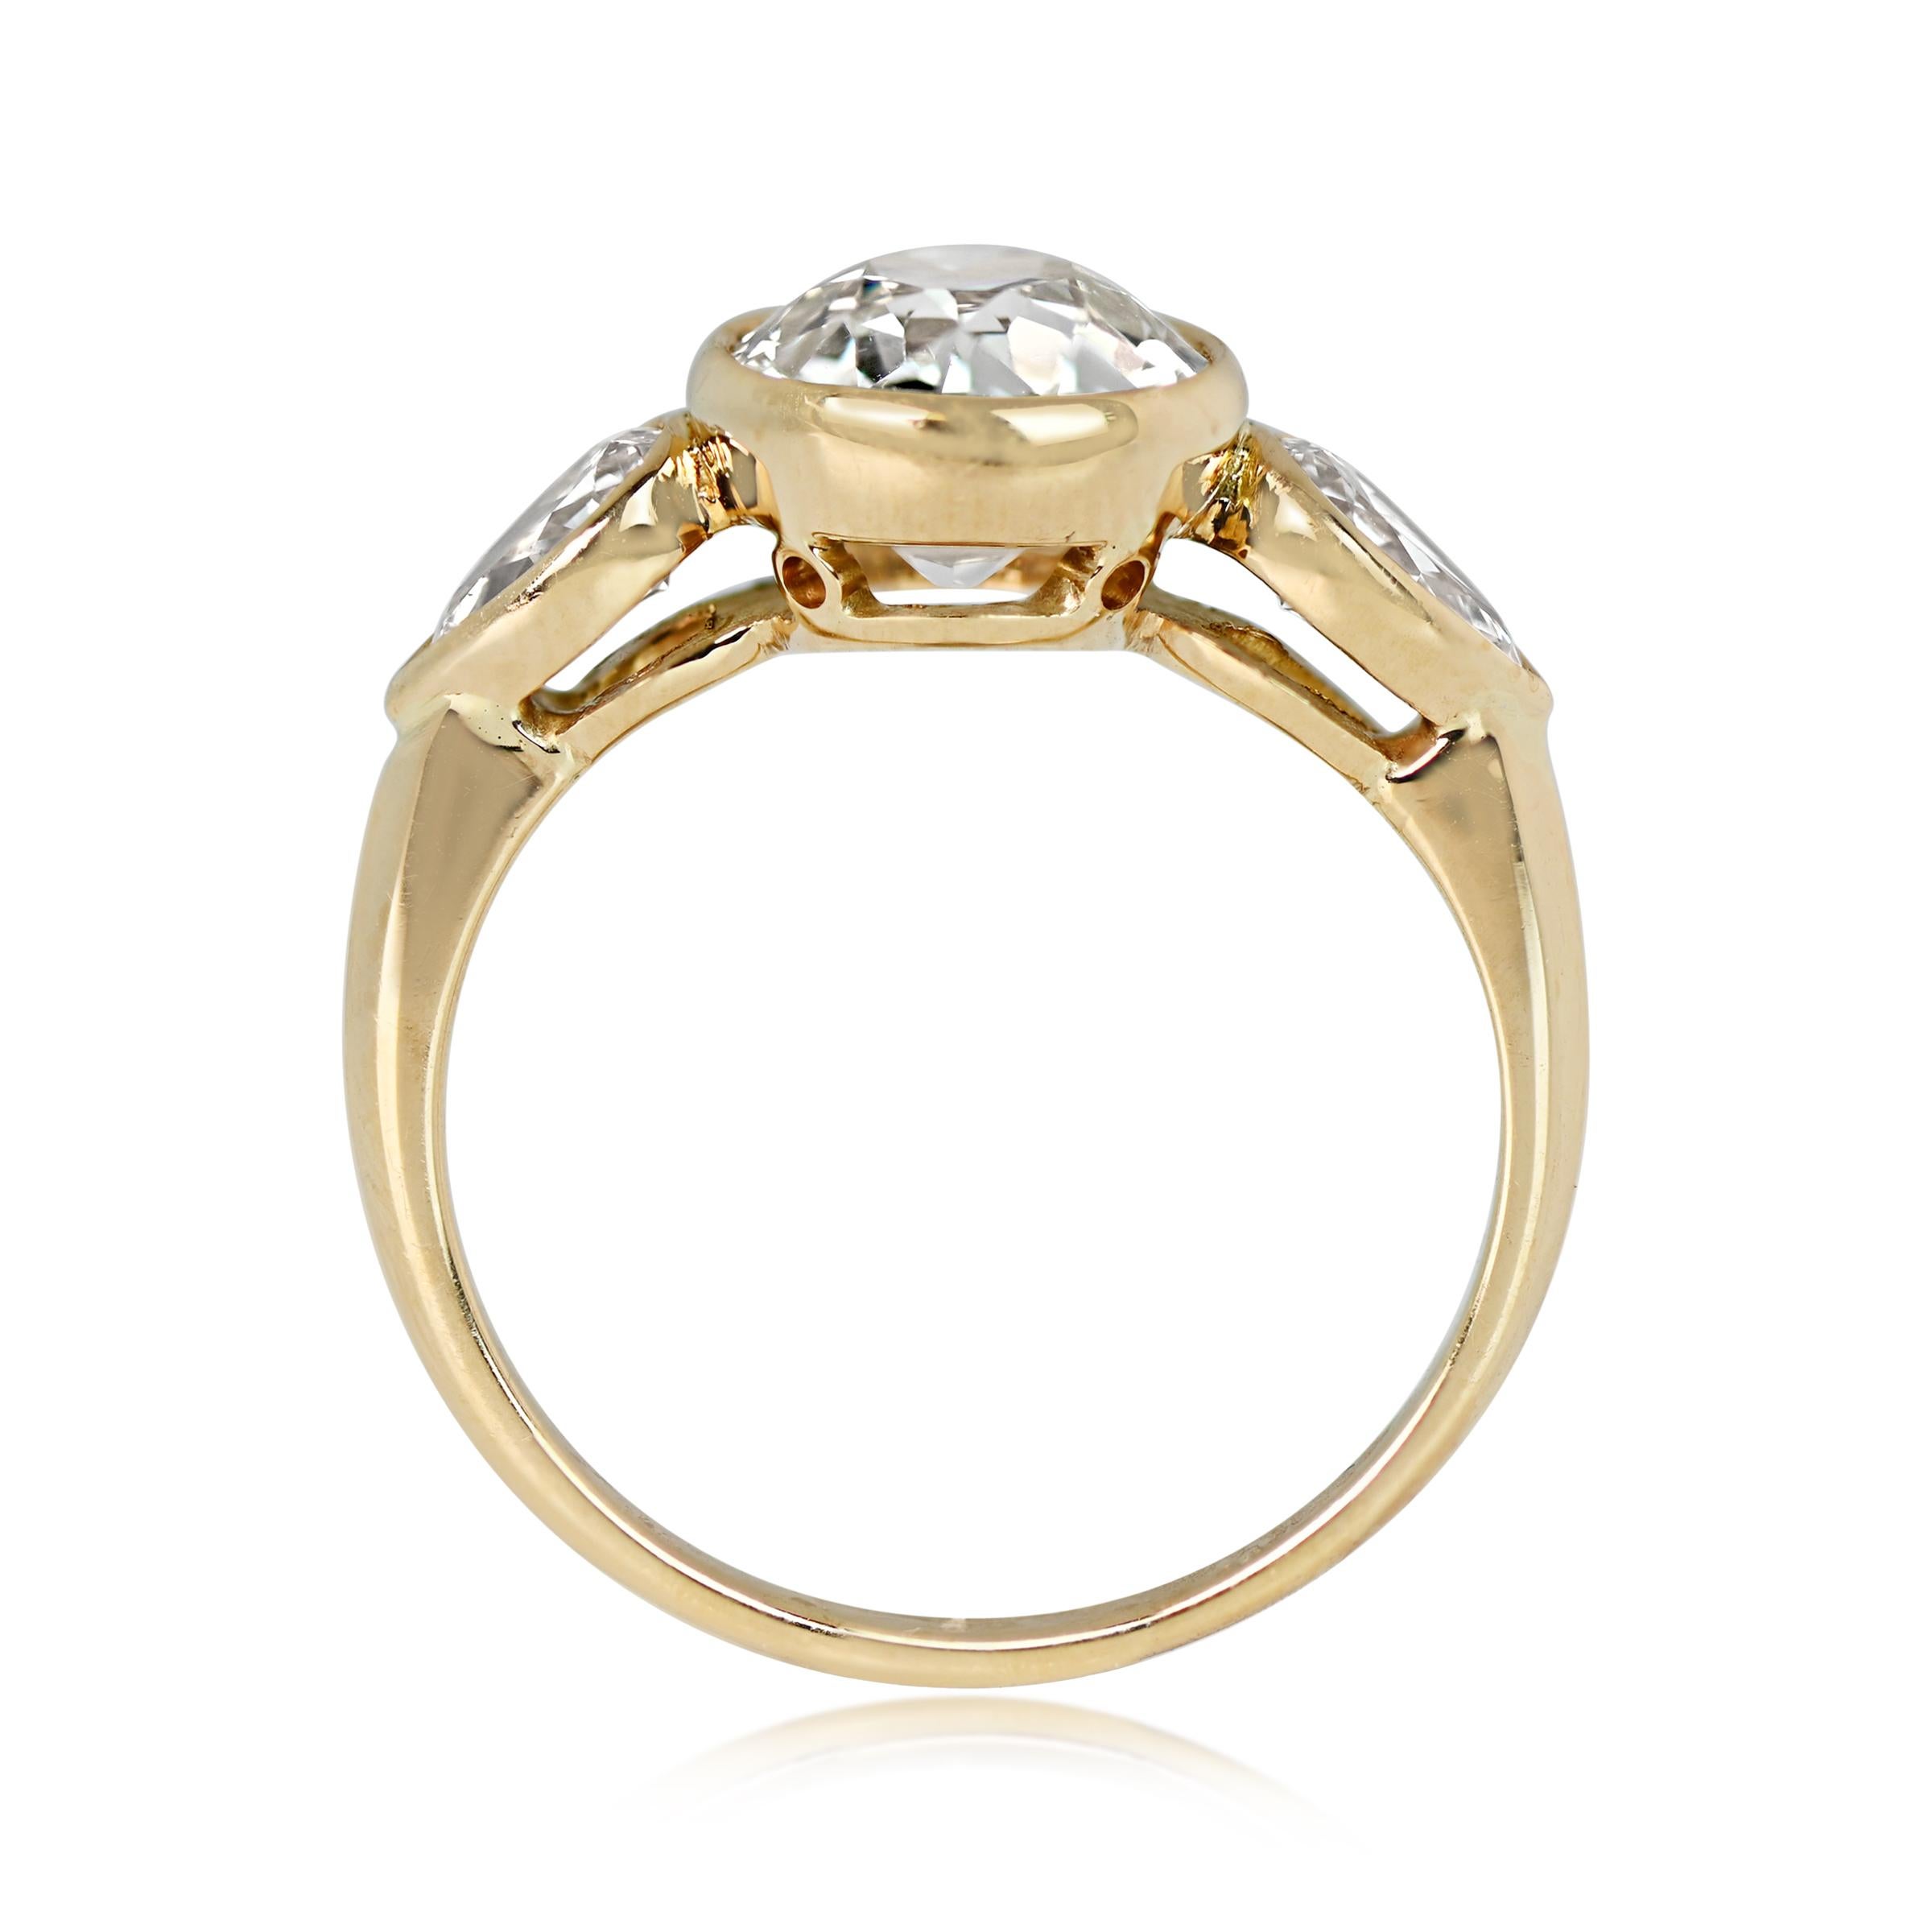 Old European Cut 2.06 Carat Old Euro-Cut Diamond Engagement Ring, 18k Yellow Gold